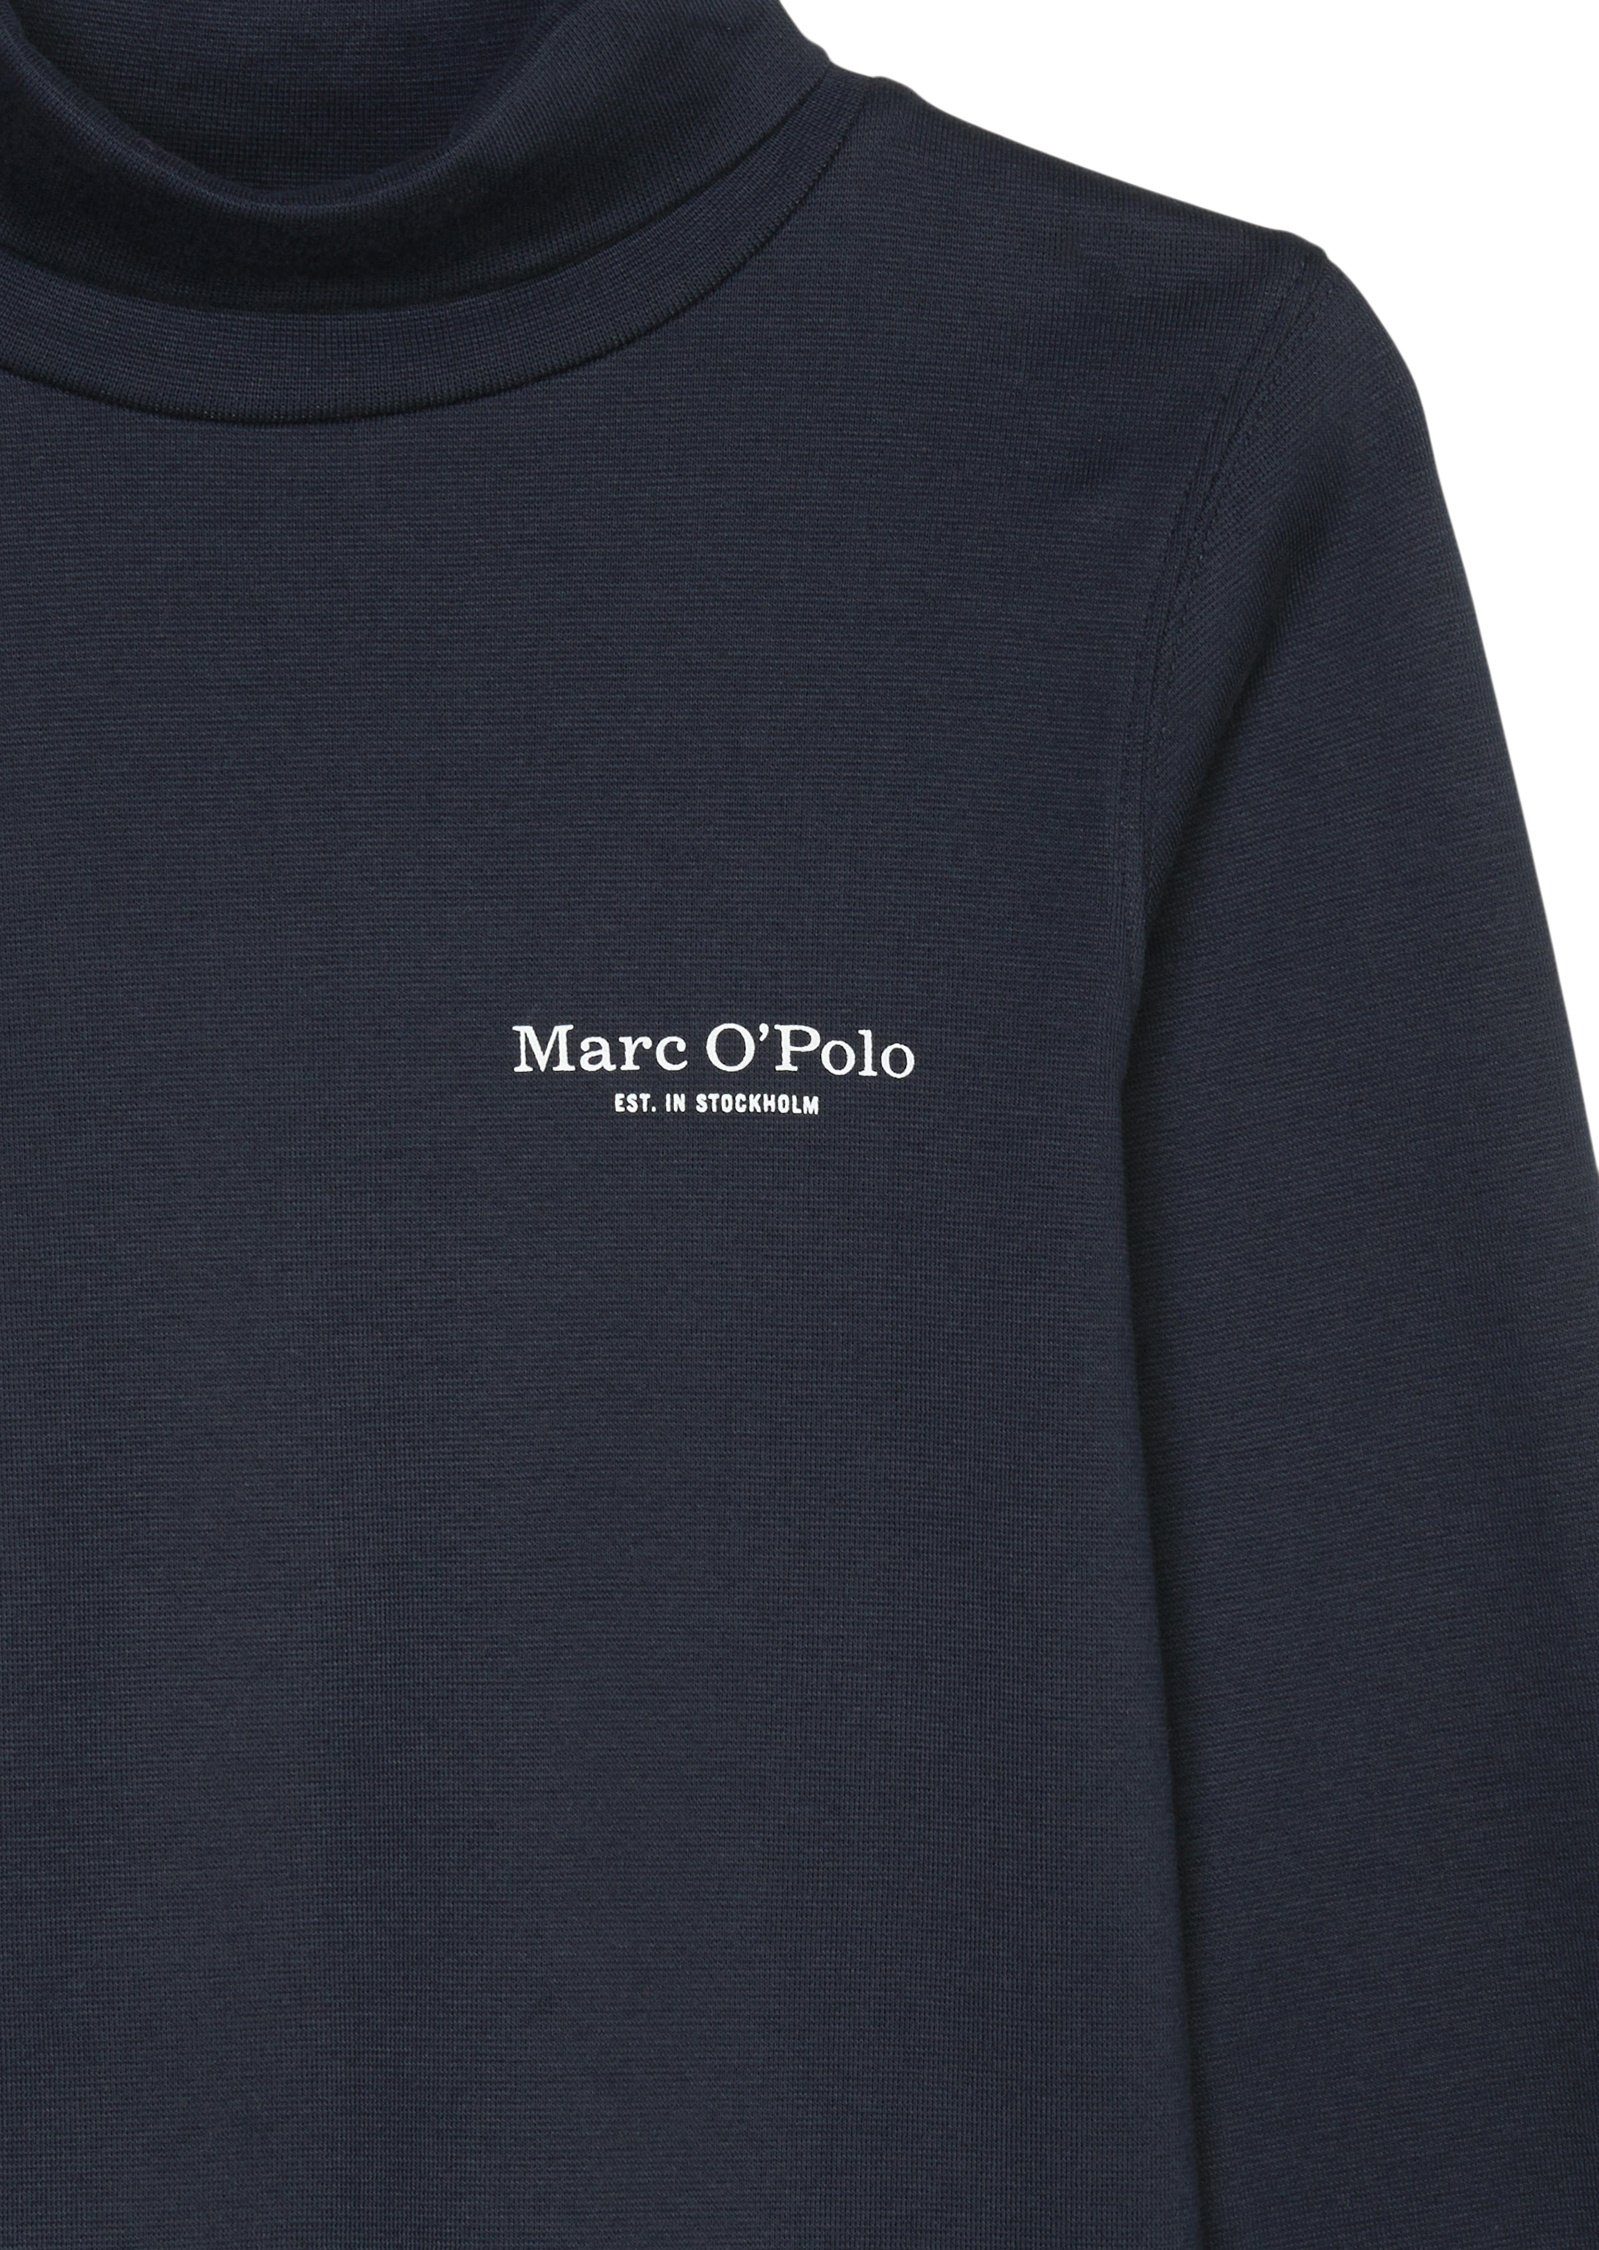 Marc O'Polo Fit blau schmalen Langarmshirt im